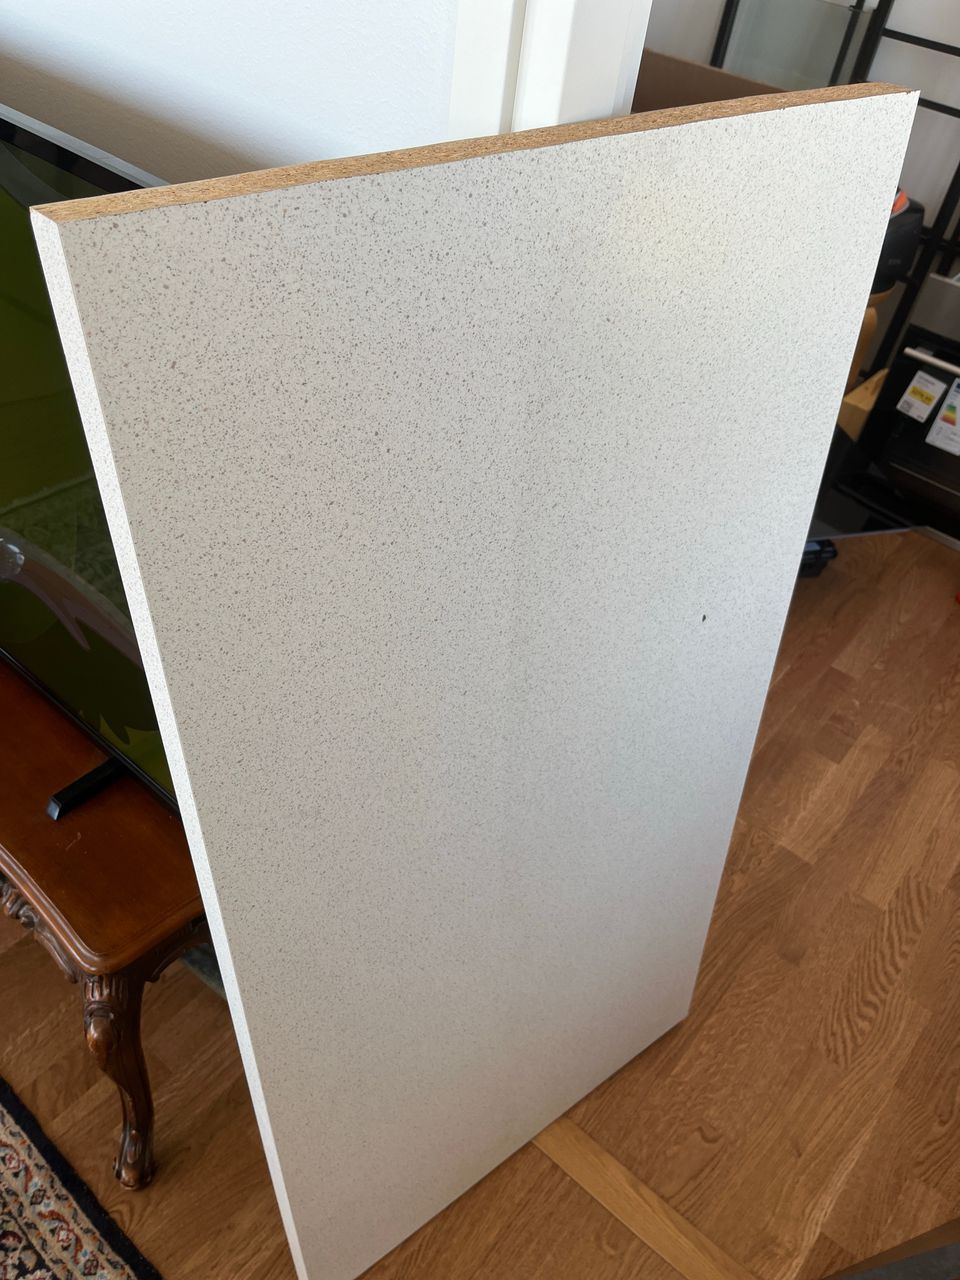 Ikea Säljan valkoinen kivikuvio laminaattityötaso